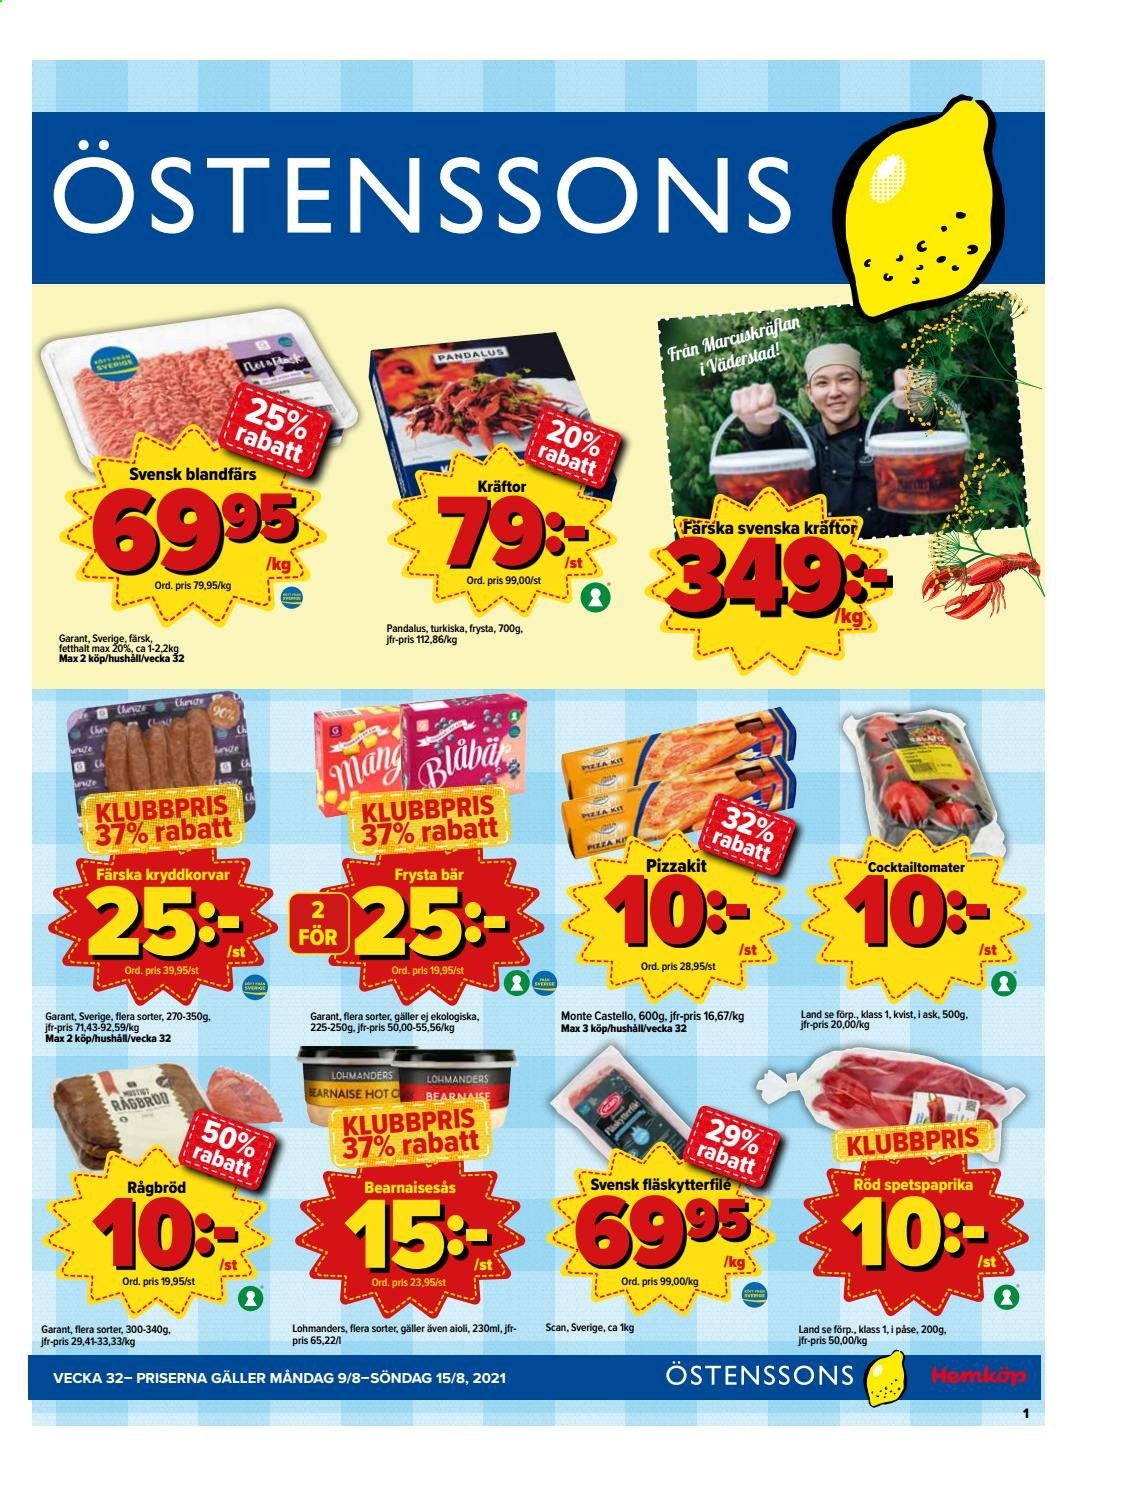 thumbnail - Östenssons reklamblad - 9/8 2021 - 15/8 2021 - varor från reklamblad - blandfärs, fläskytterfilé, kräftor, aïoli. Sida 1.